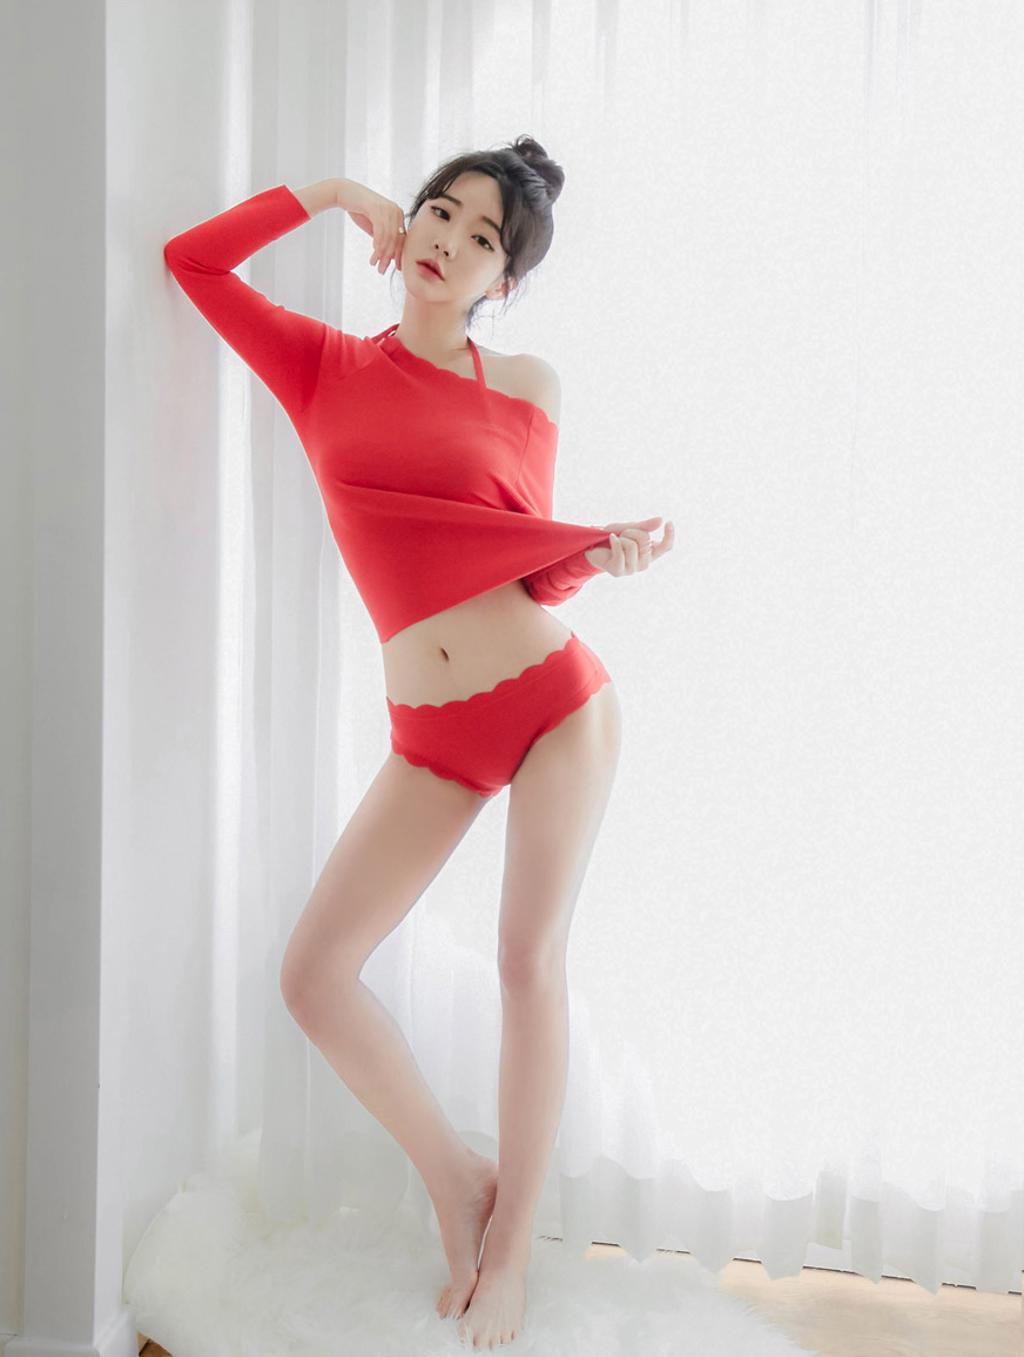 韩国M女模特.韩国美女模特写真集.Thor037